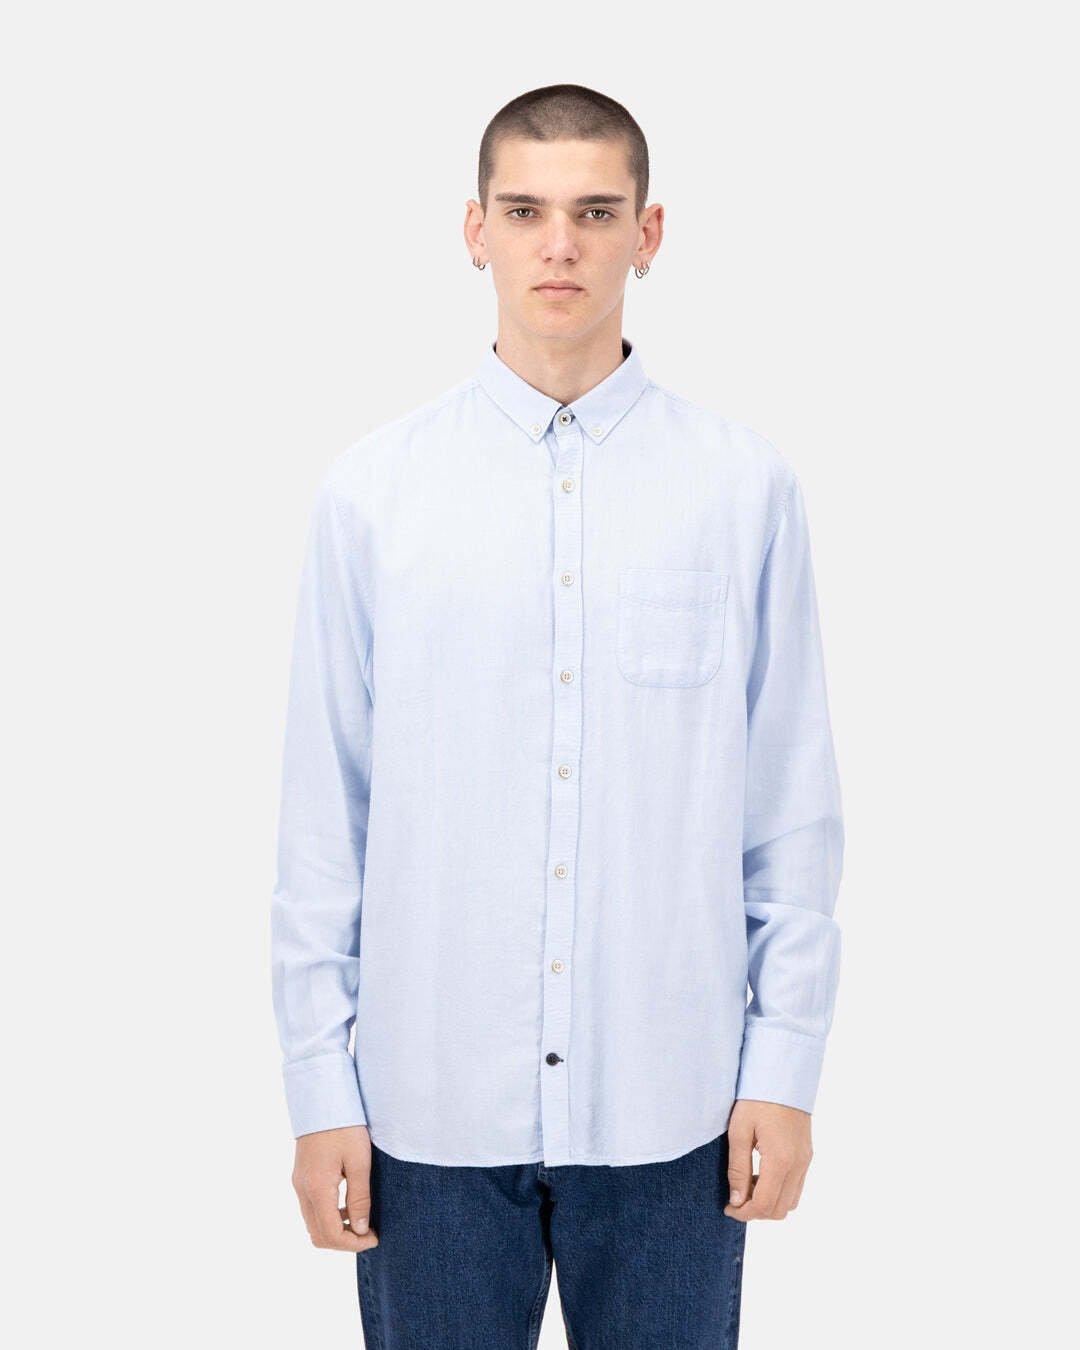 Hemden Shirt-brushed Twill Herren Hellblau S von Colours & Sons